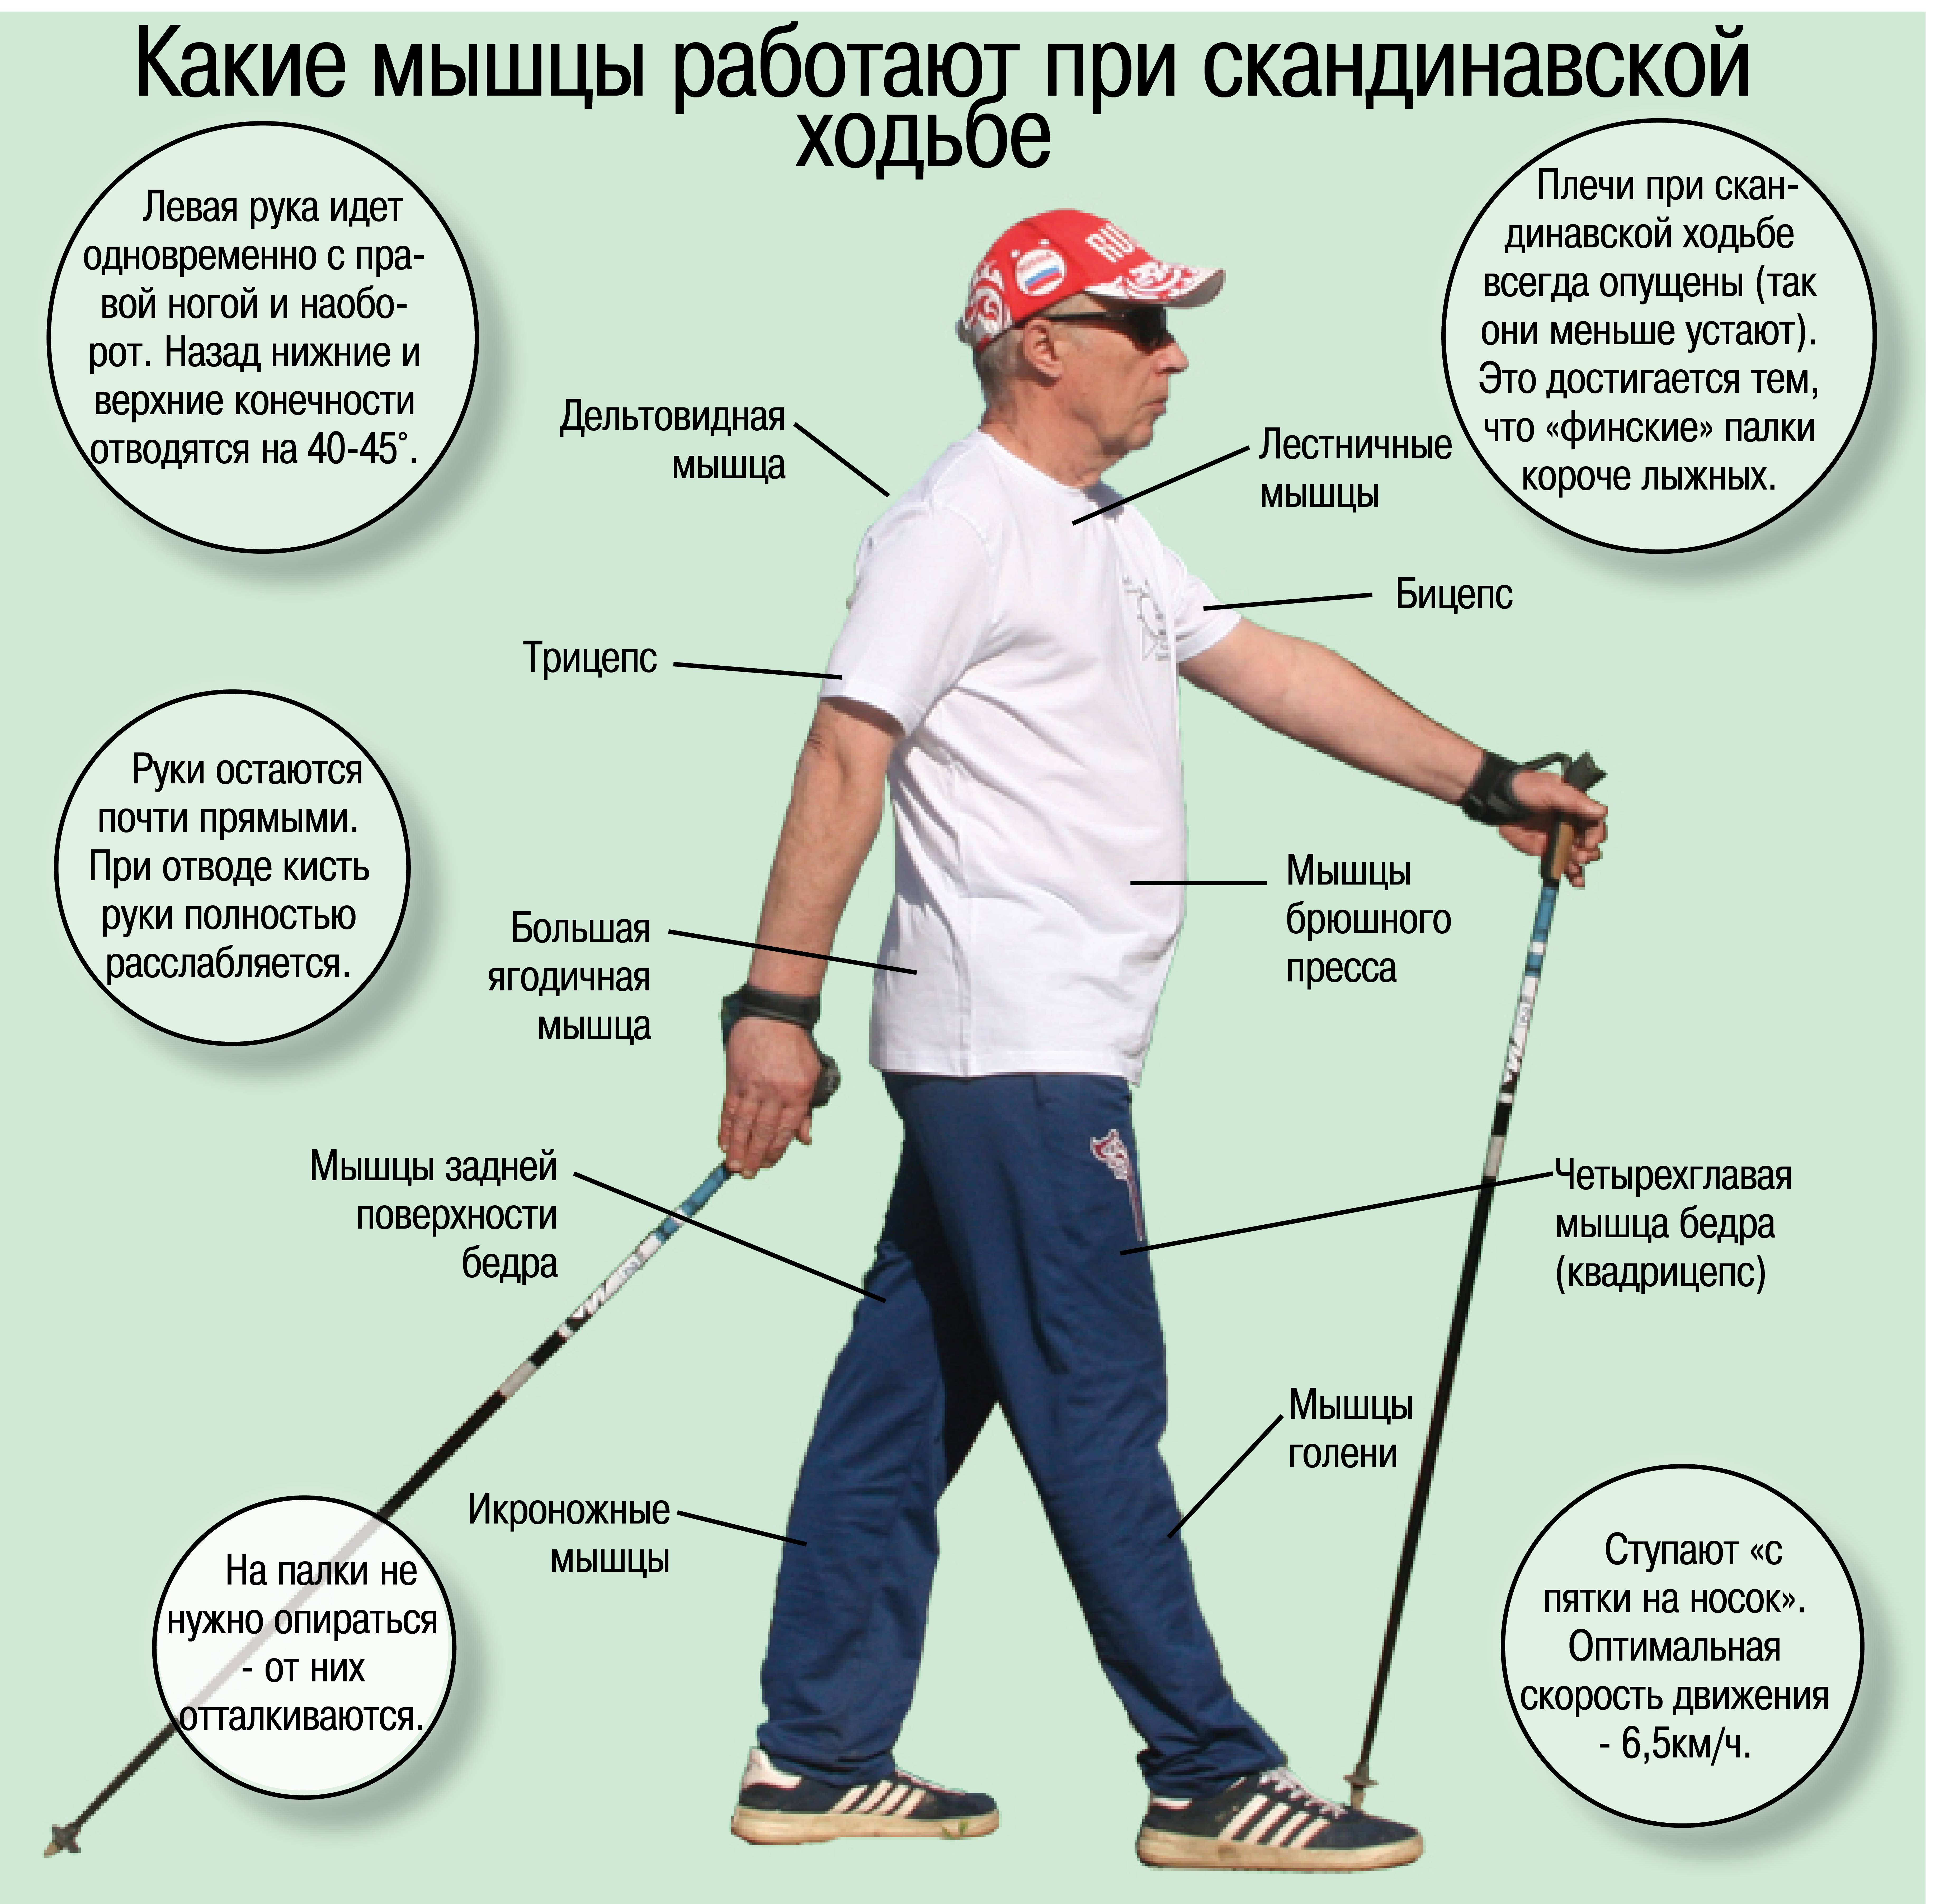 Техника скандинавской ходьбы с палками для пожилых: как правильно заниматься, противопоказания